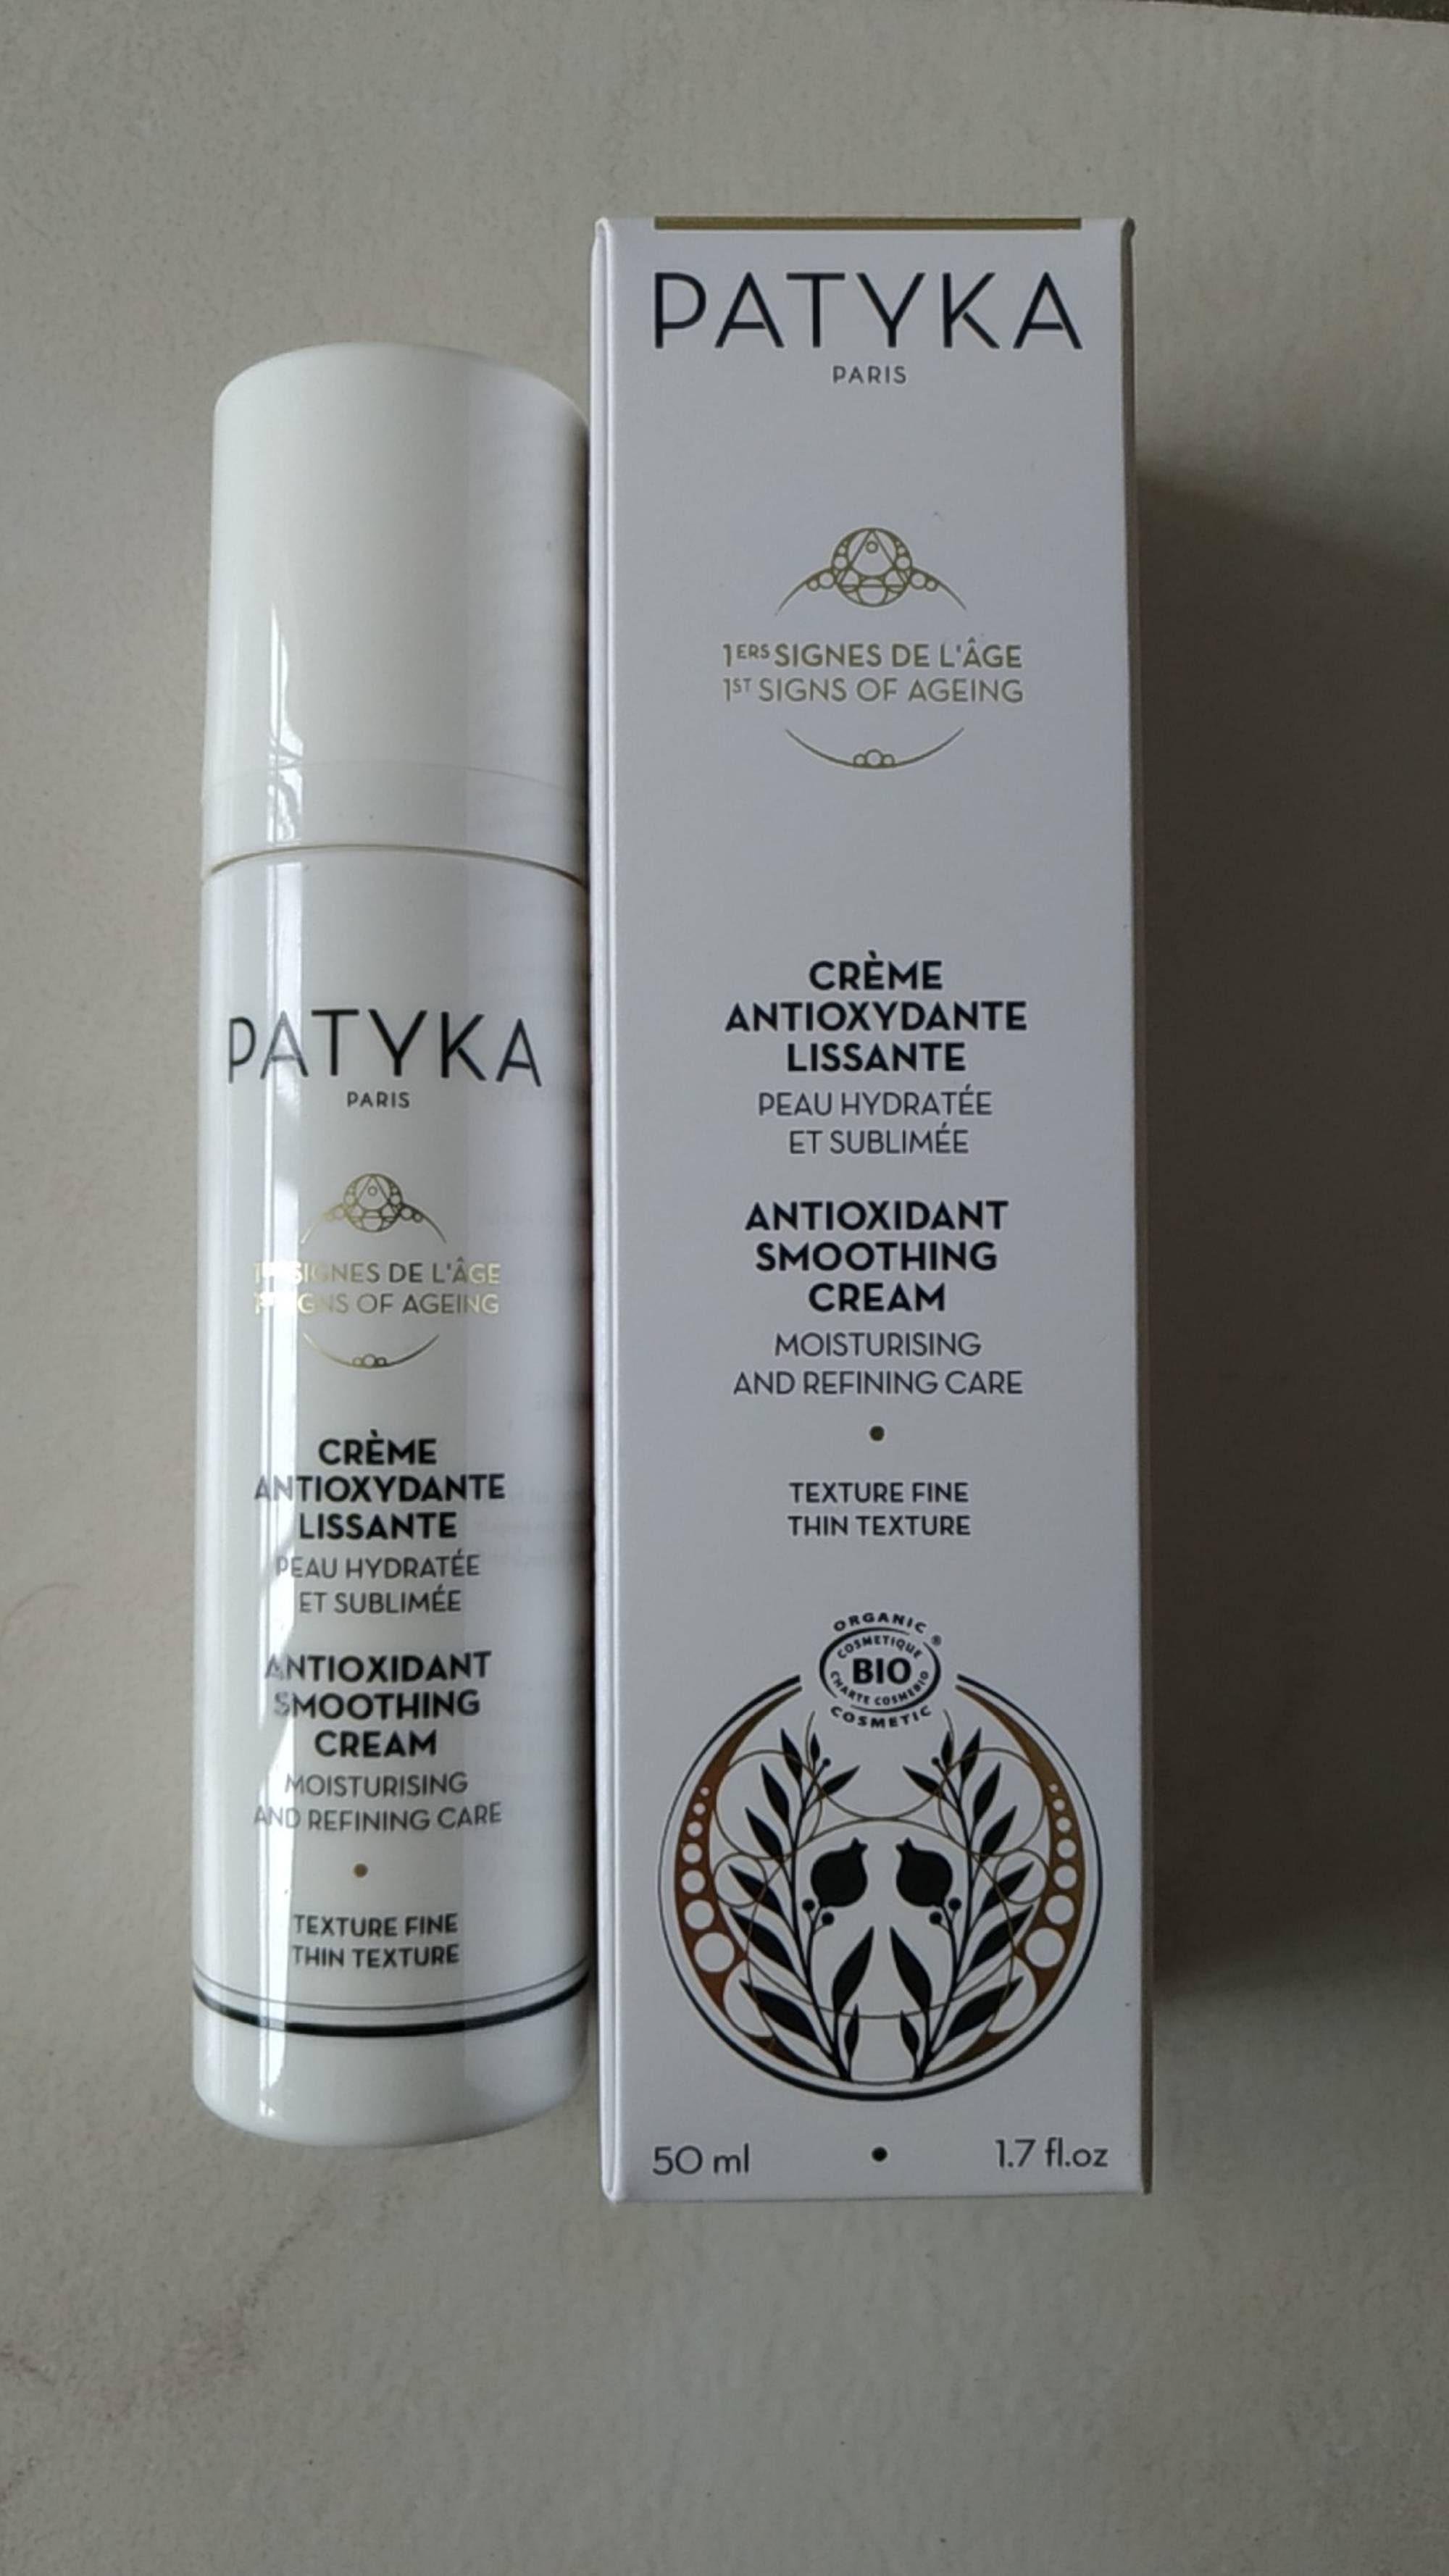 PATYKA - Crème antioxydante lissante bio